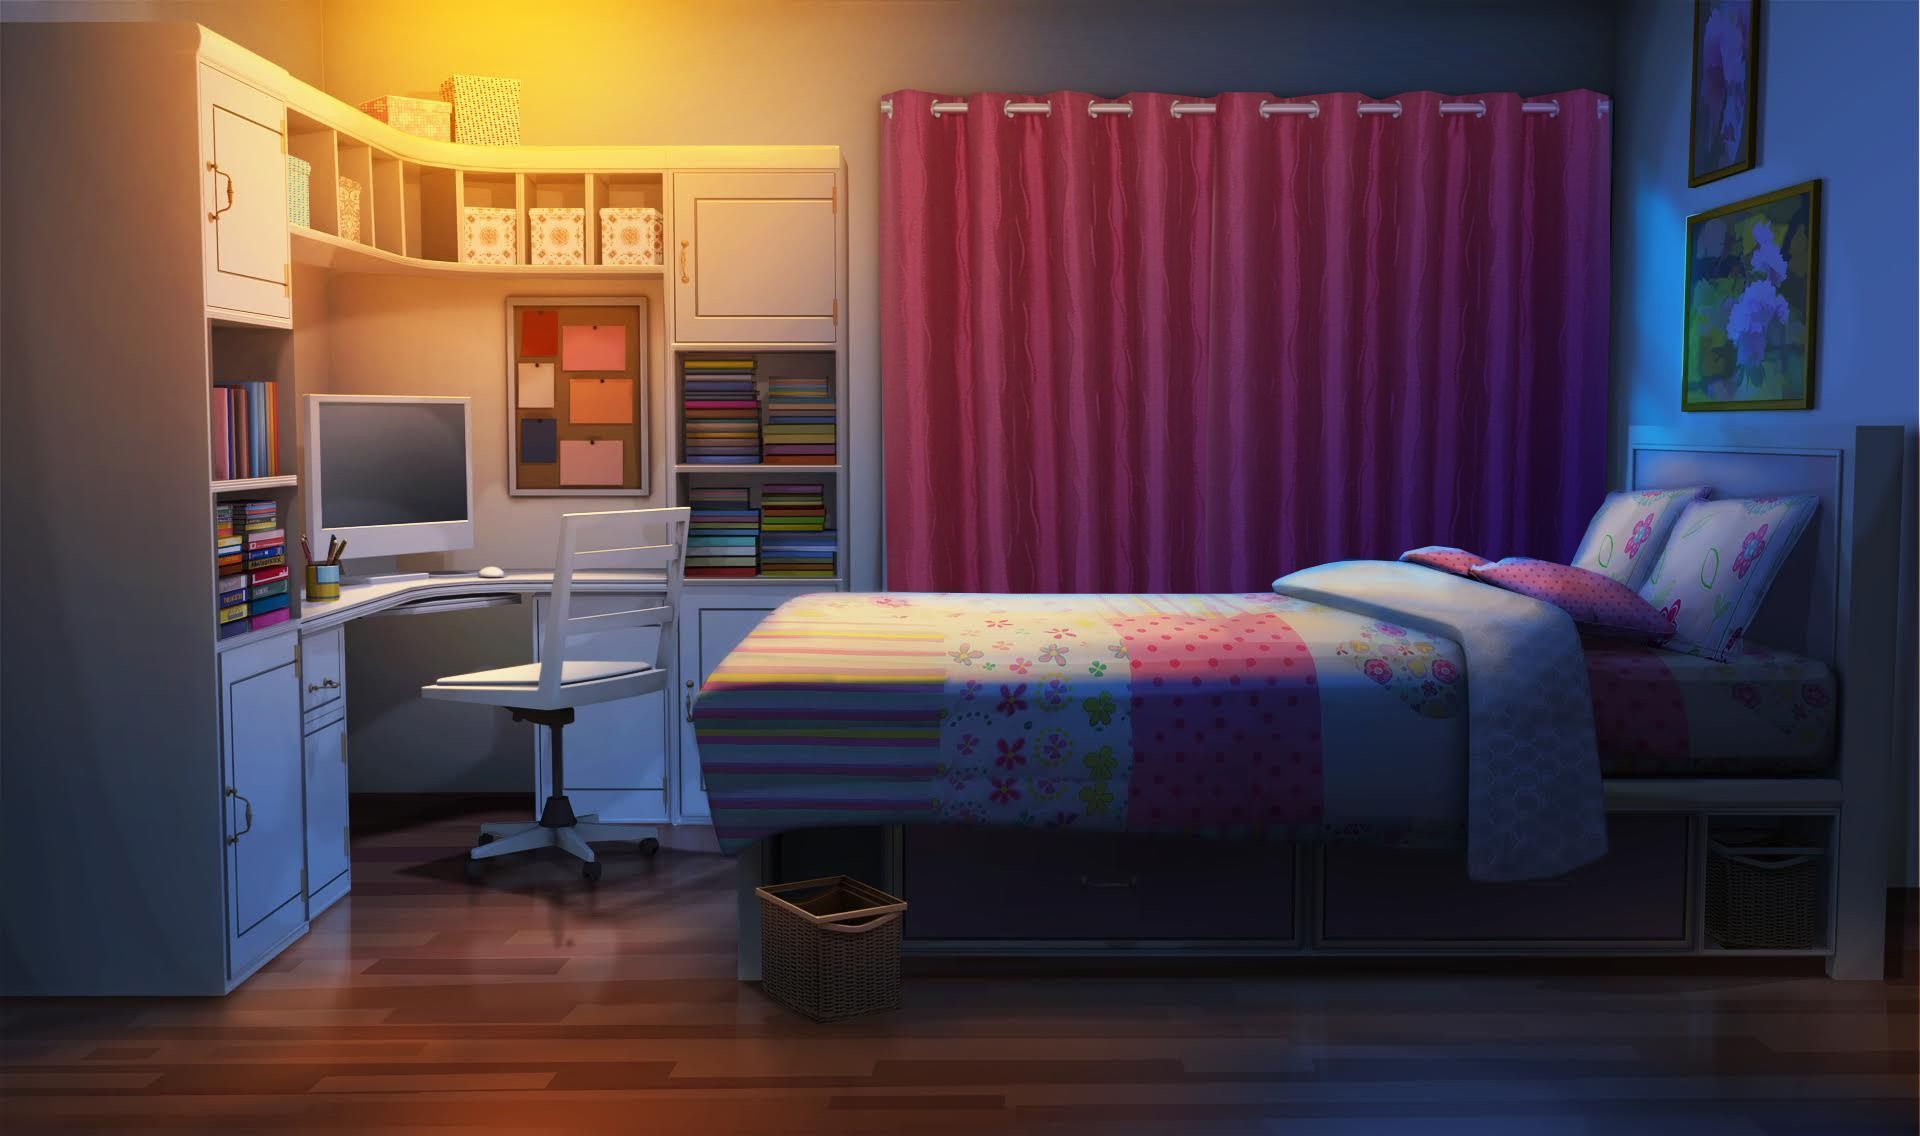 Với phòng anime đêm đầy những màu sắc và đường nét đặc trưng của phong cách anime, bạn sẽ bị lôi cuốn vào thế giới ảo của các nhân vật bạn yêu thích. Hãy thử tưởng tượng mình đang ở đó và cảm nhận sự thú vị của nó!